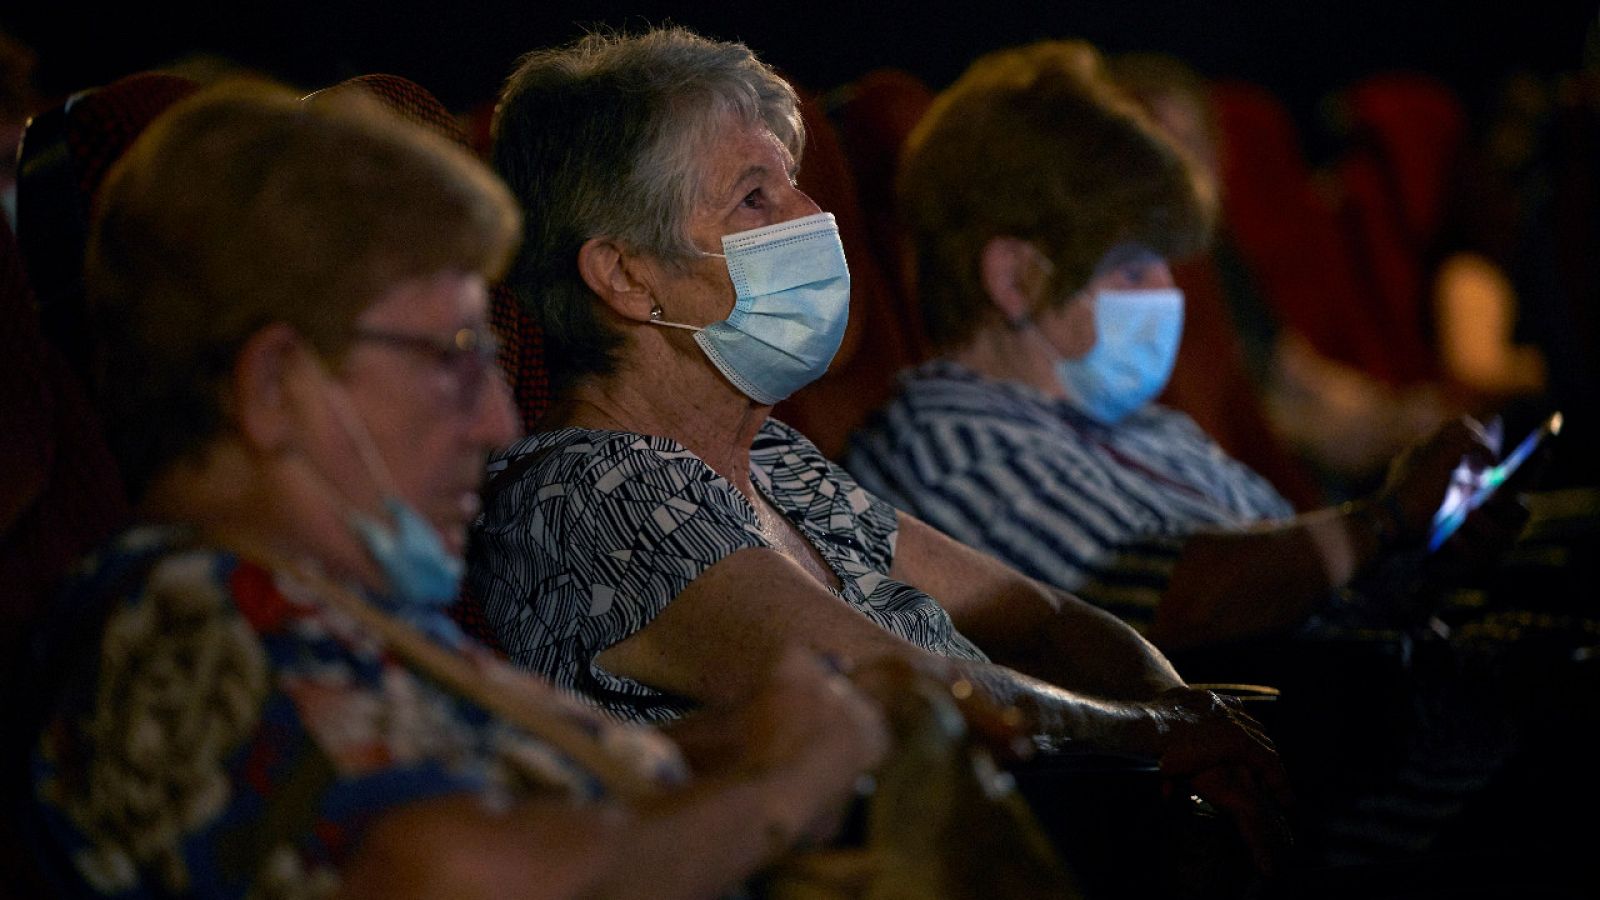 Galicia prohíbe las mascarillas con válvula y Sanidad las desaconseja porque pueden contagiar